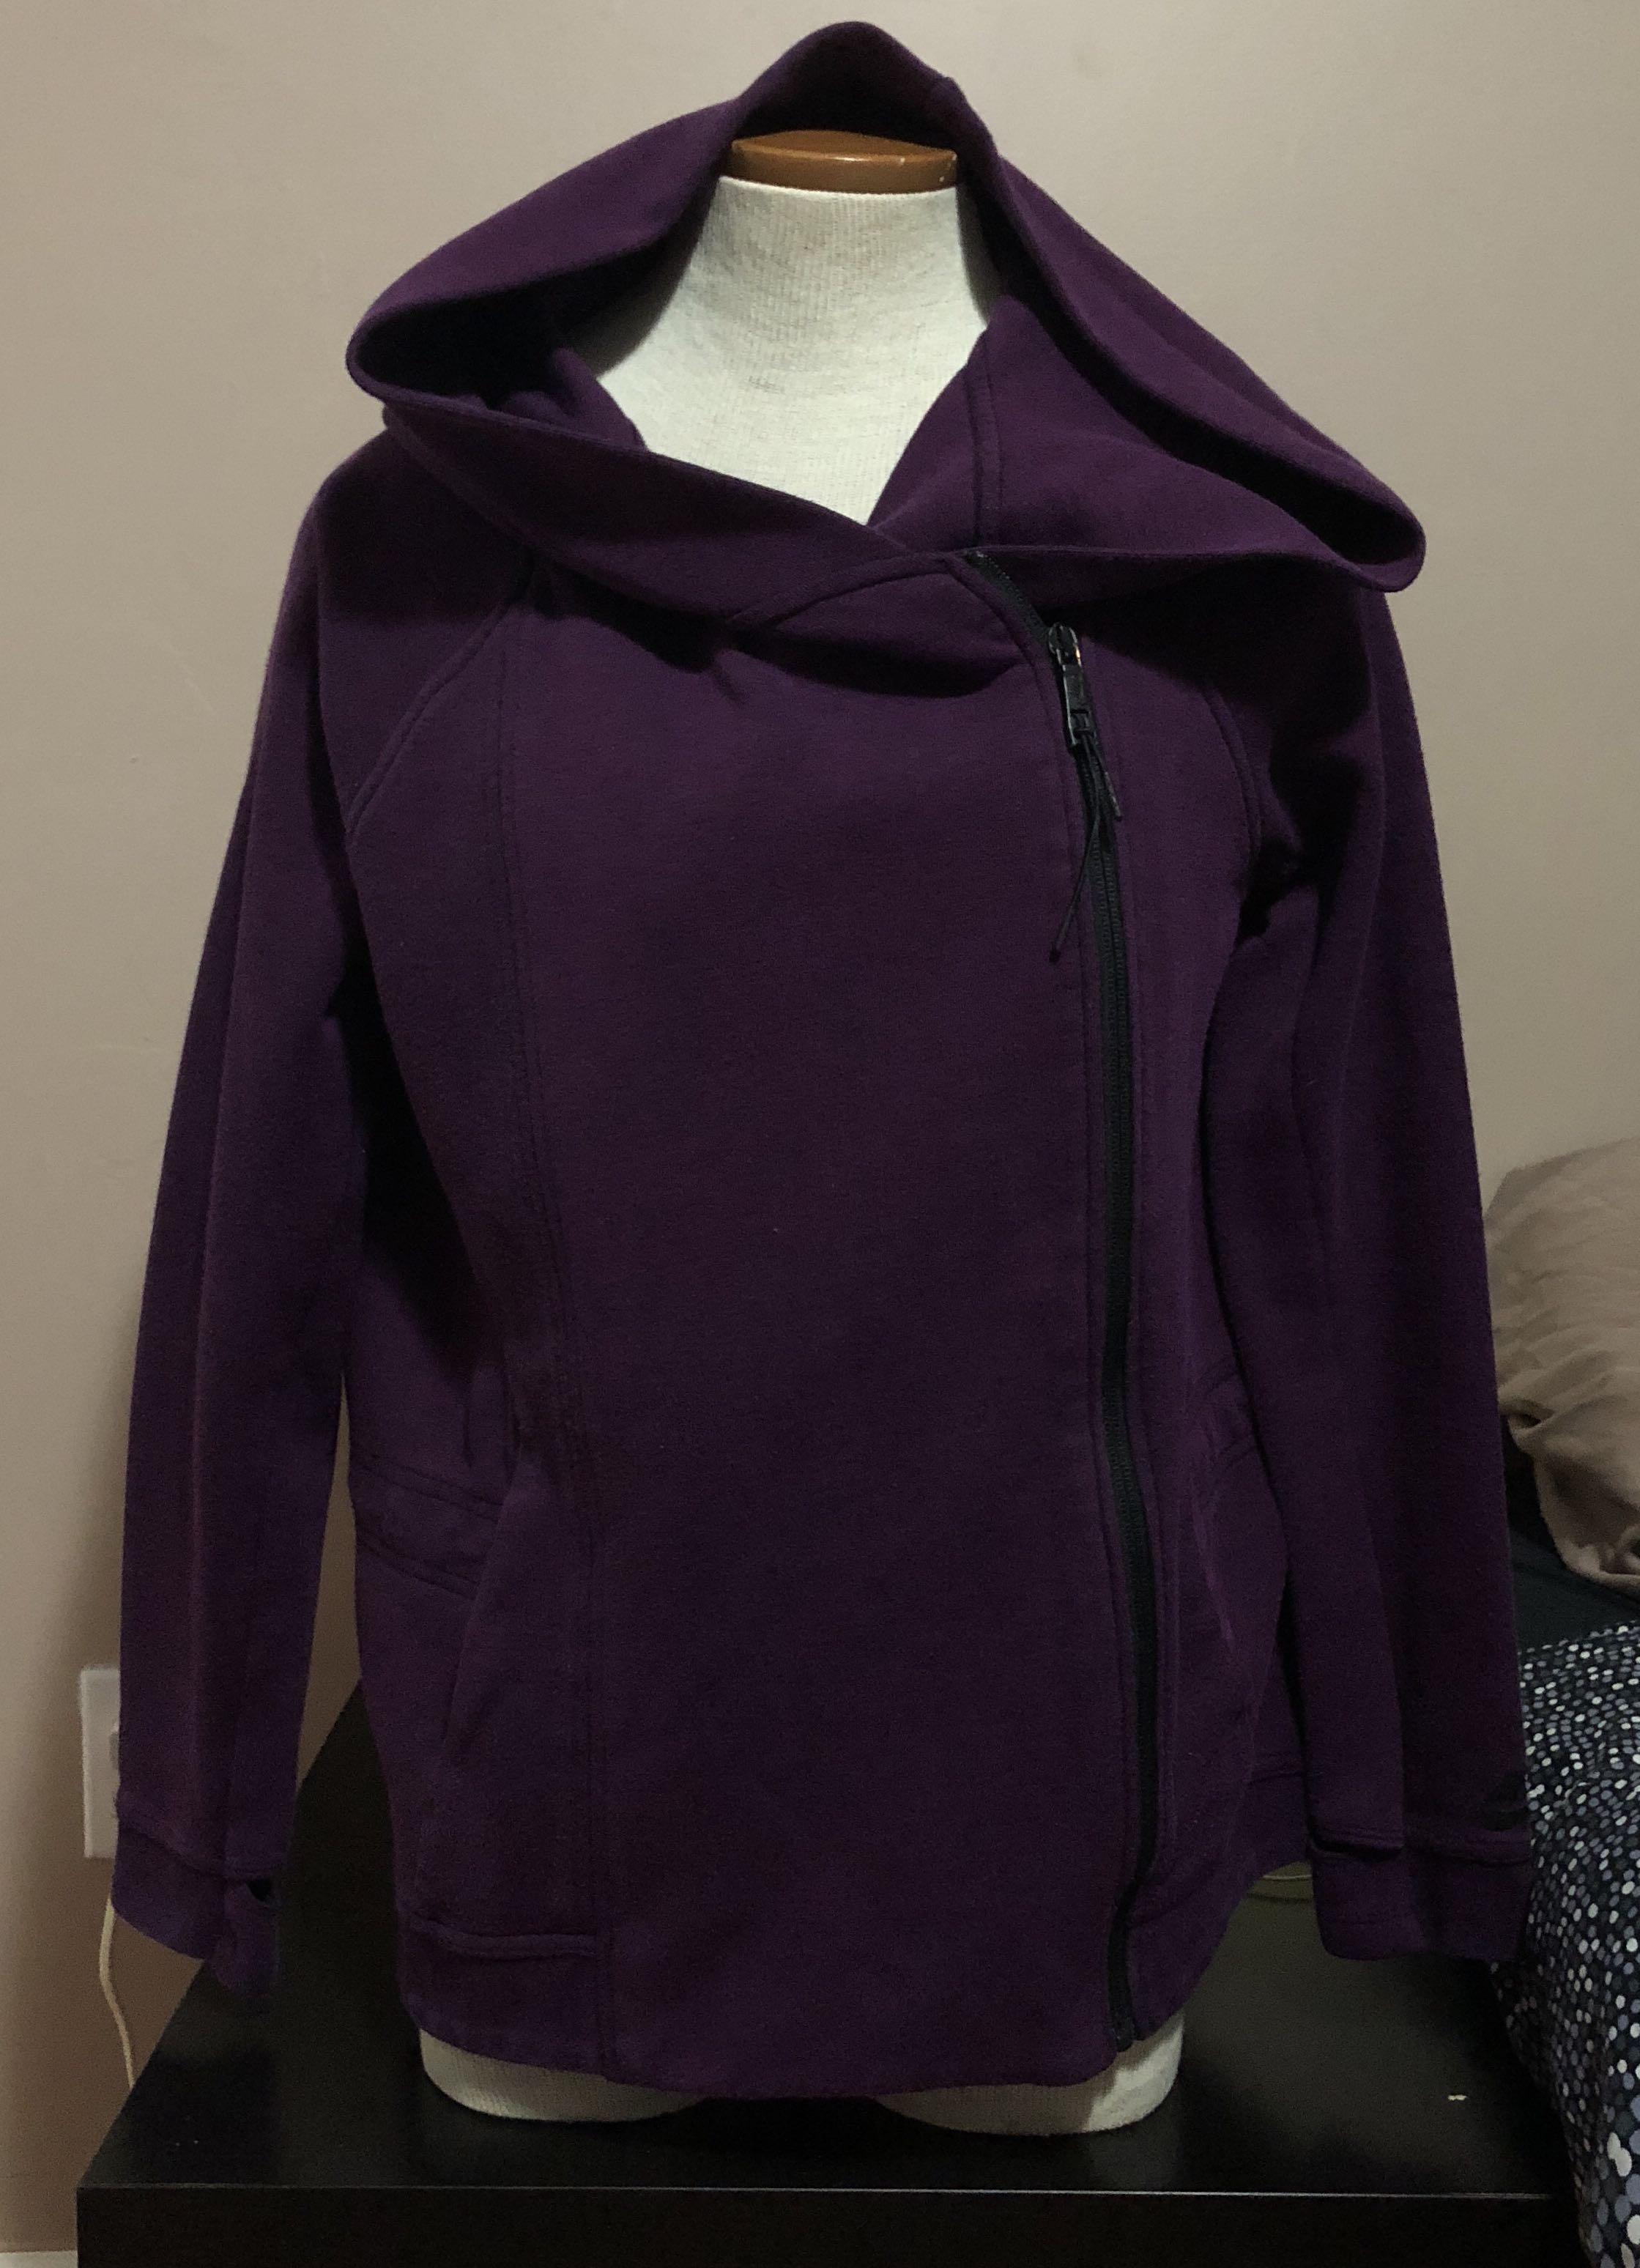 nike tech fleece purple hoodie